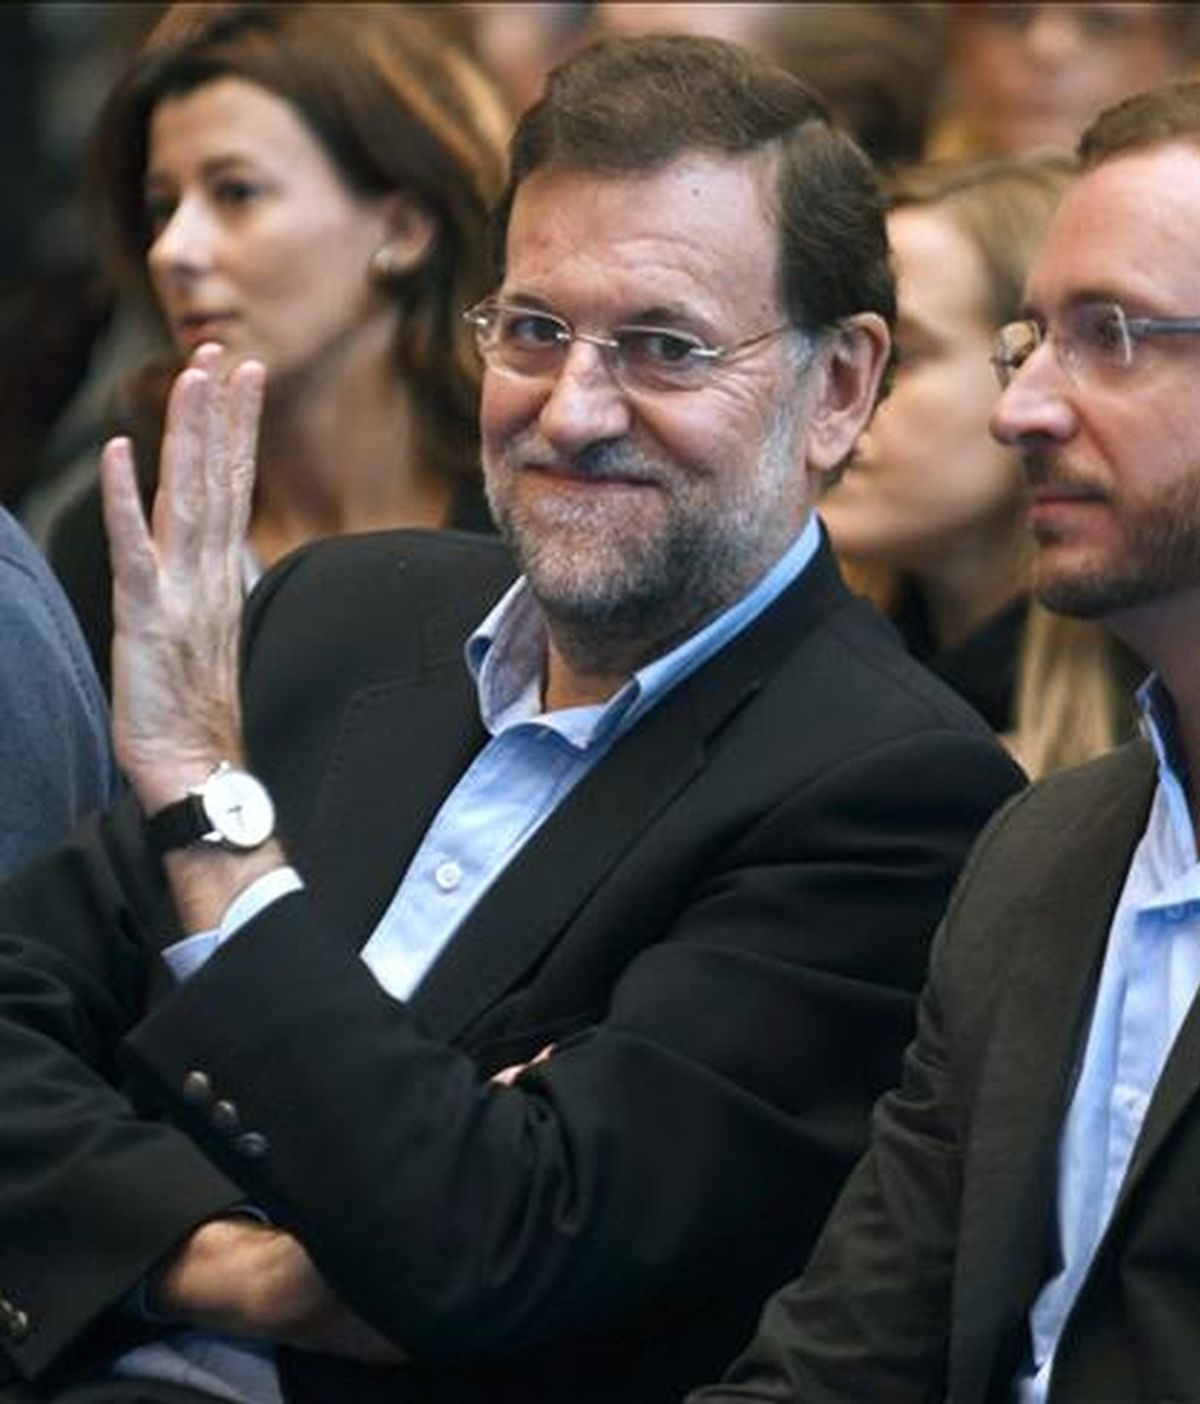 El presidente del PP, Mariano Rajoy, durante el mitin celebrado hoy en esta ciudad, en el que su partido ha presentado a los candidatos a las acaldías de Vitoria, Bilbao y San Sebastián, y a las diputaciones forales de Álava, Vizcaya y Guipúzcoa. EFE